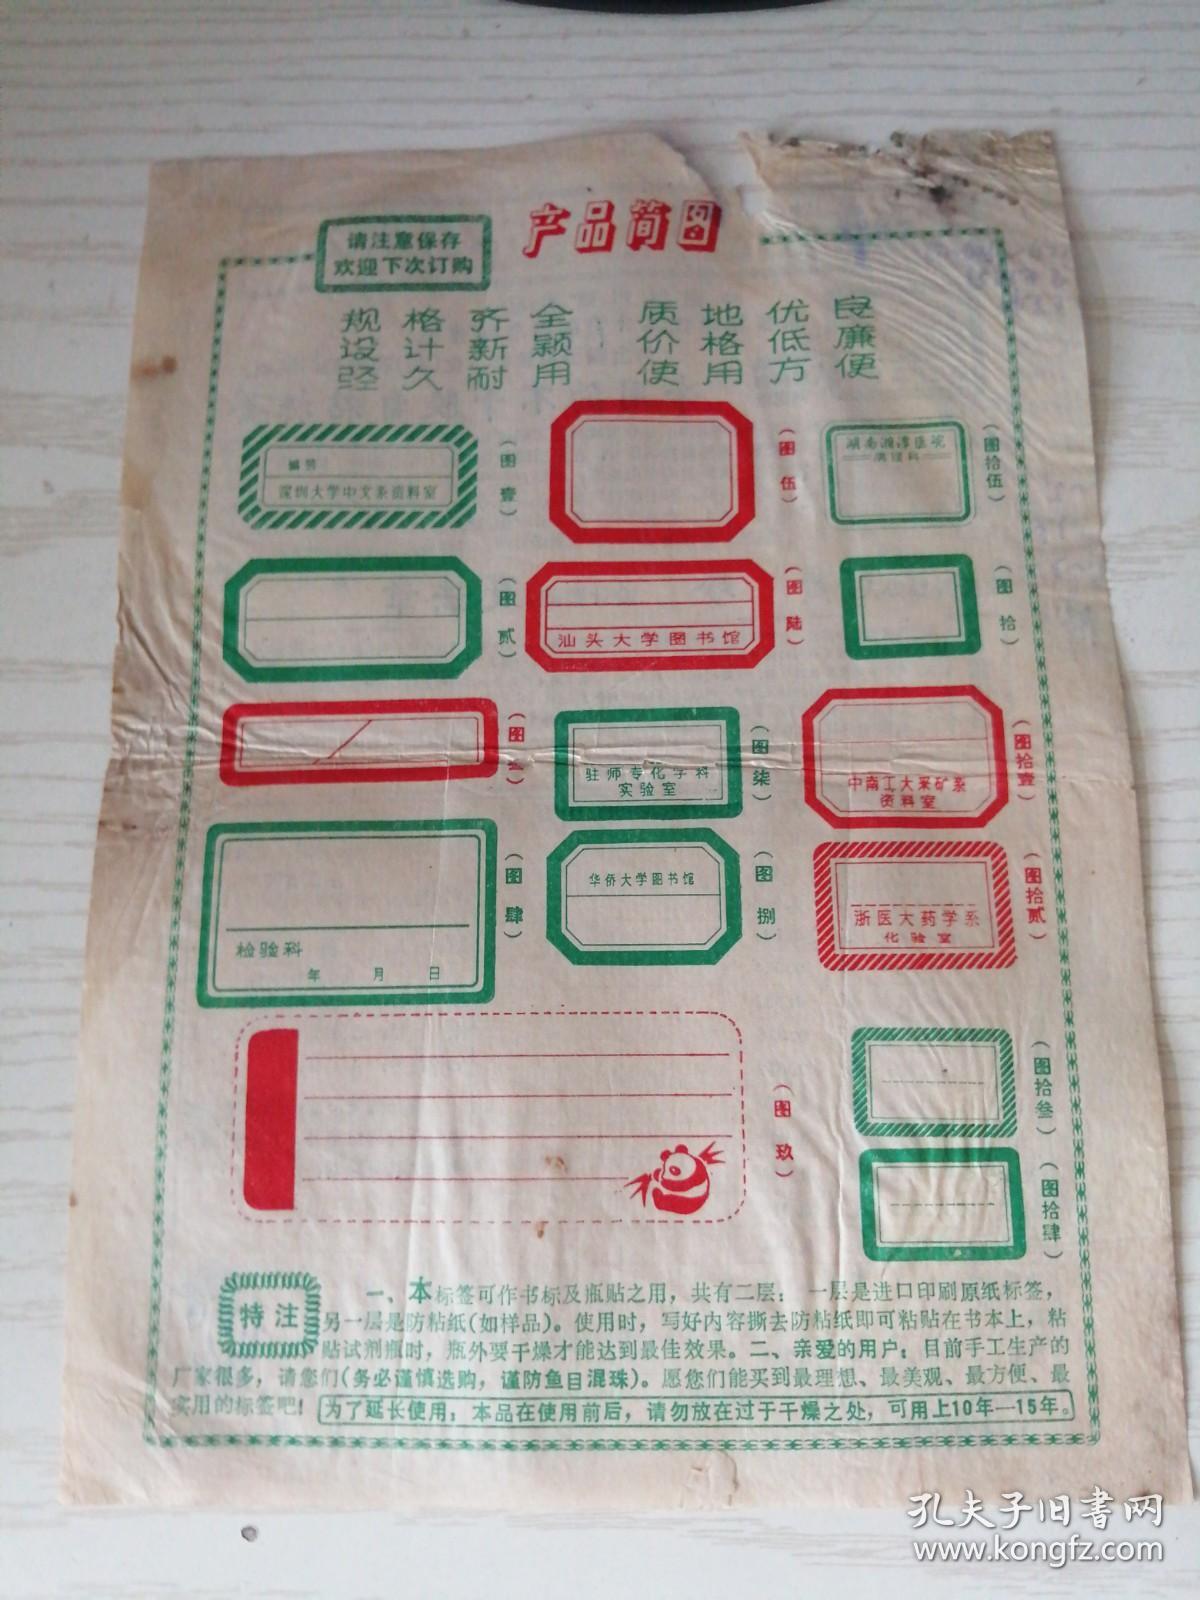 【老广告页】早期 中国温州试验区金乡科学技术公司《专用不干胶自粘标签》16开